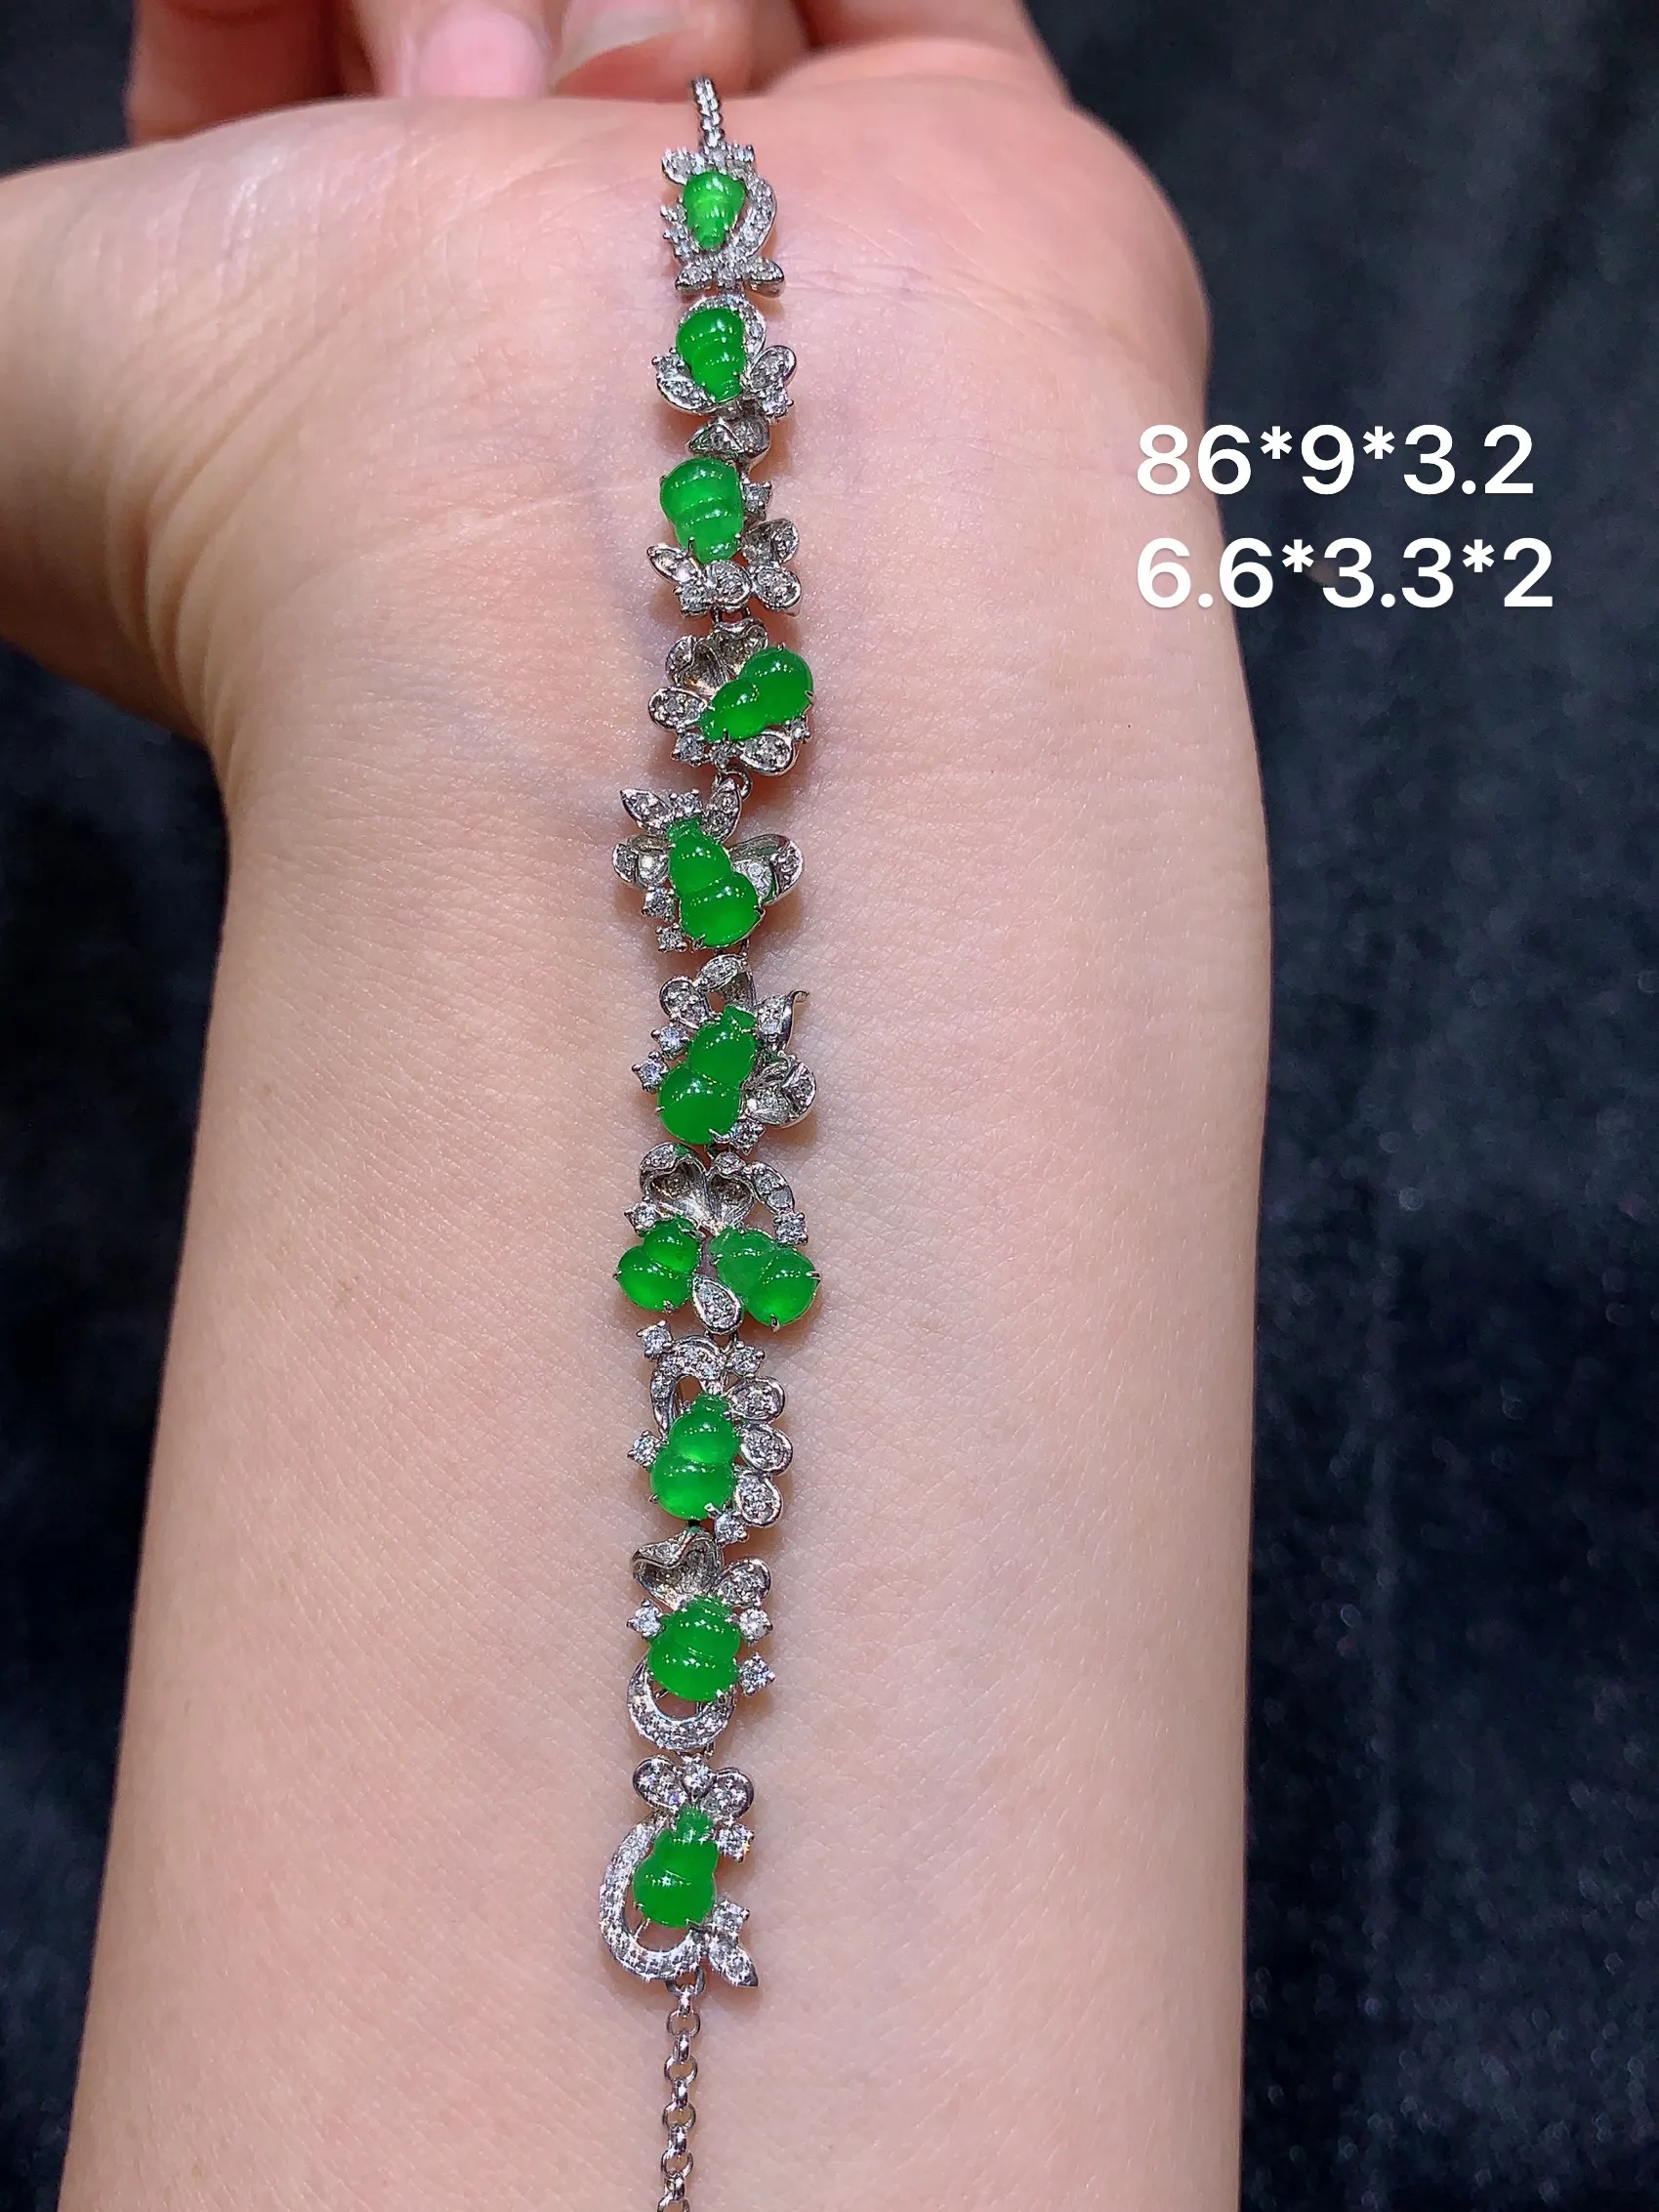 18K金钻镶嵌满绿葫芦手链 玉质细腻 色泽艳丽 款式新颖时尚精美 亮眼周长18整体尺寸86*9*3.2